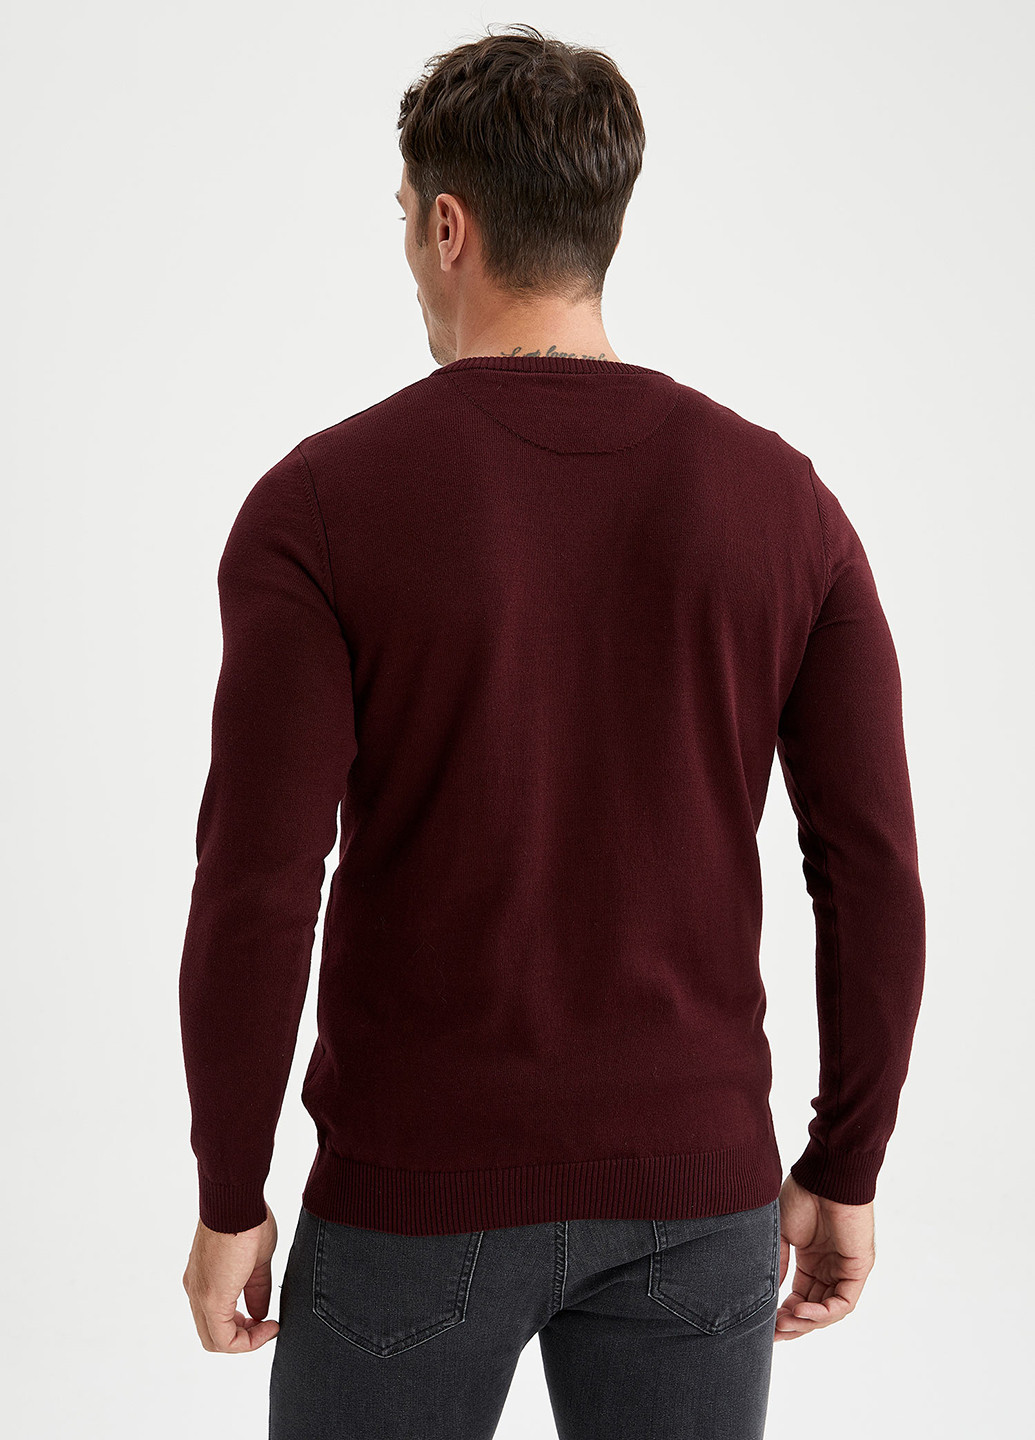 Бордовый демисезонный пуловер пуловер DeFacto